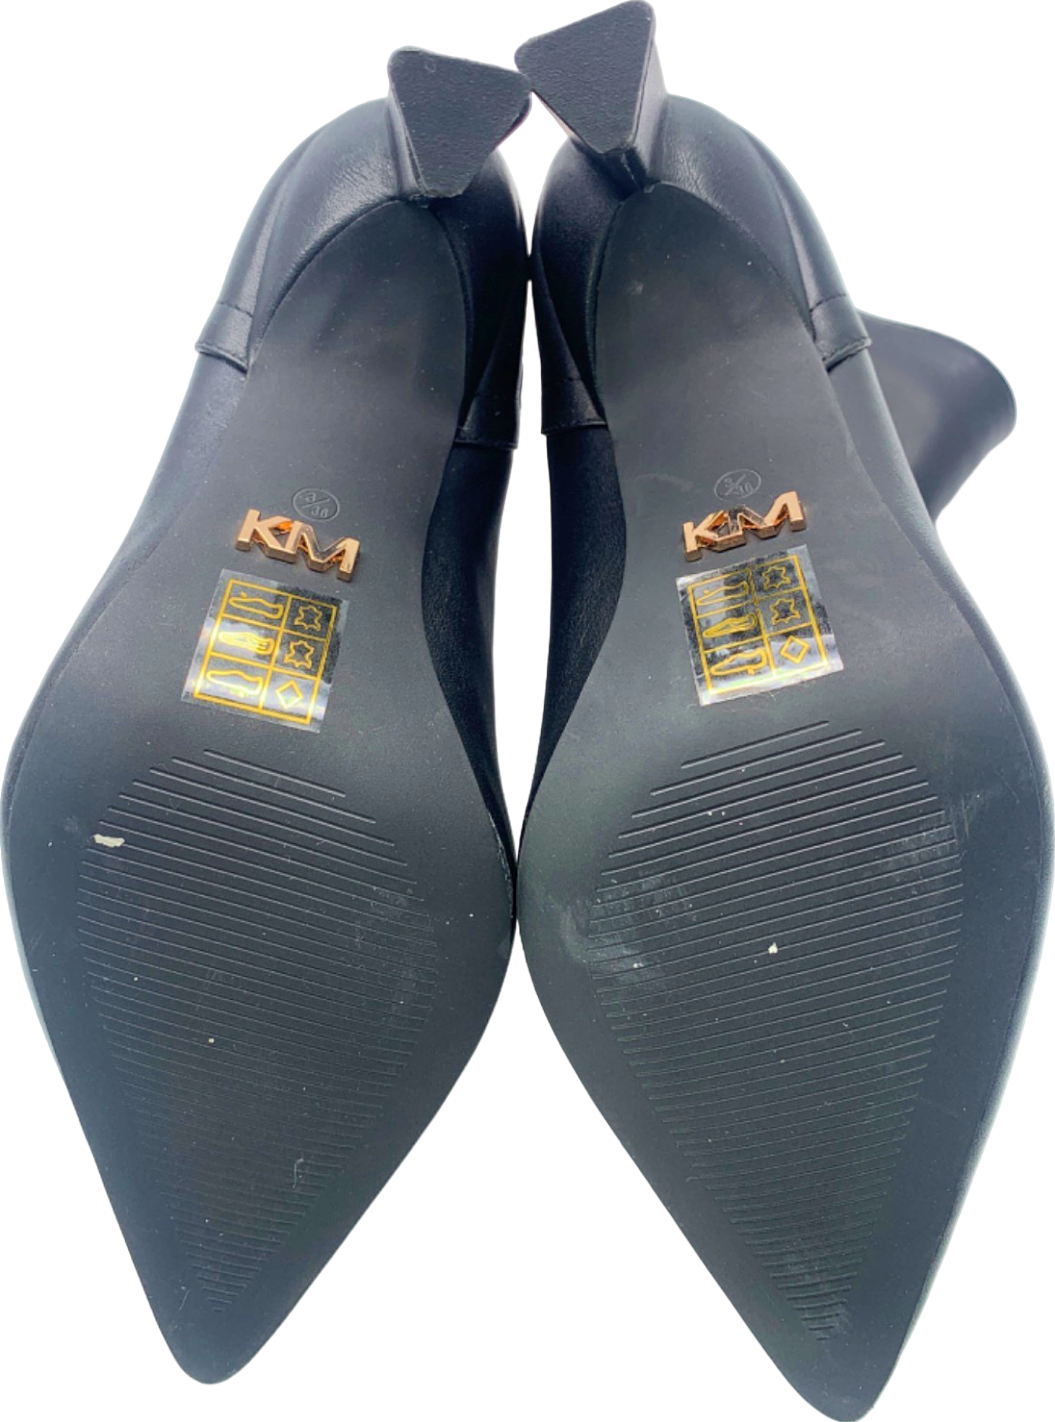 River Island Black Studded Heeled Ankle Boots EU 36